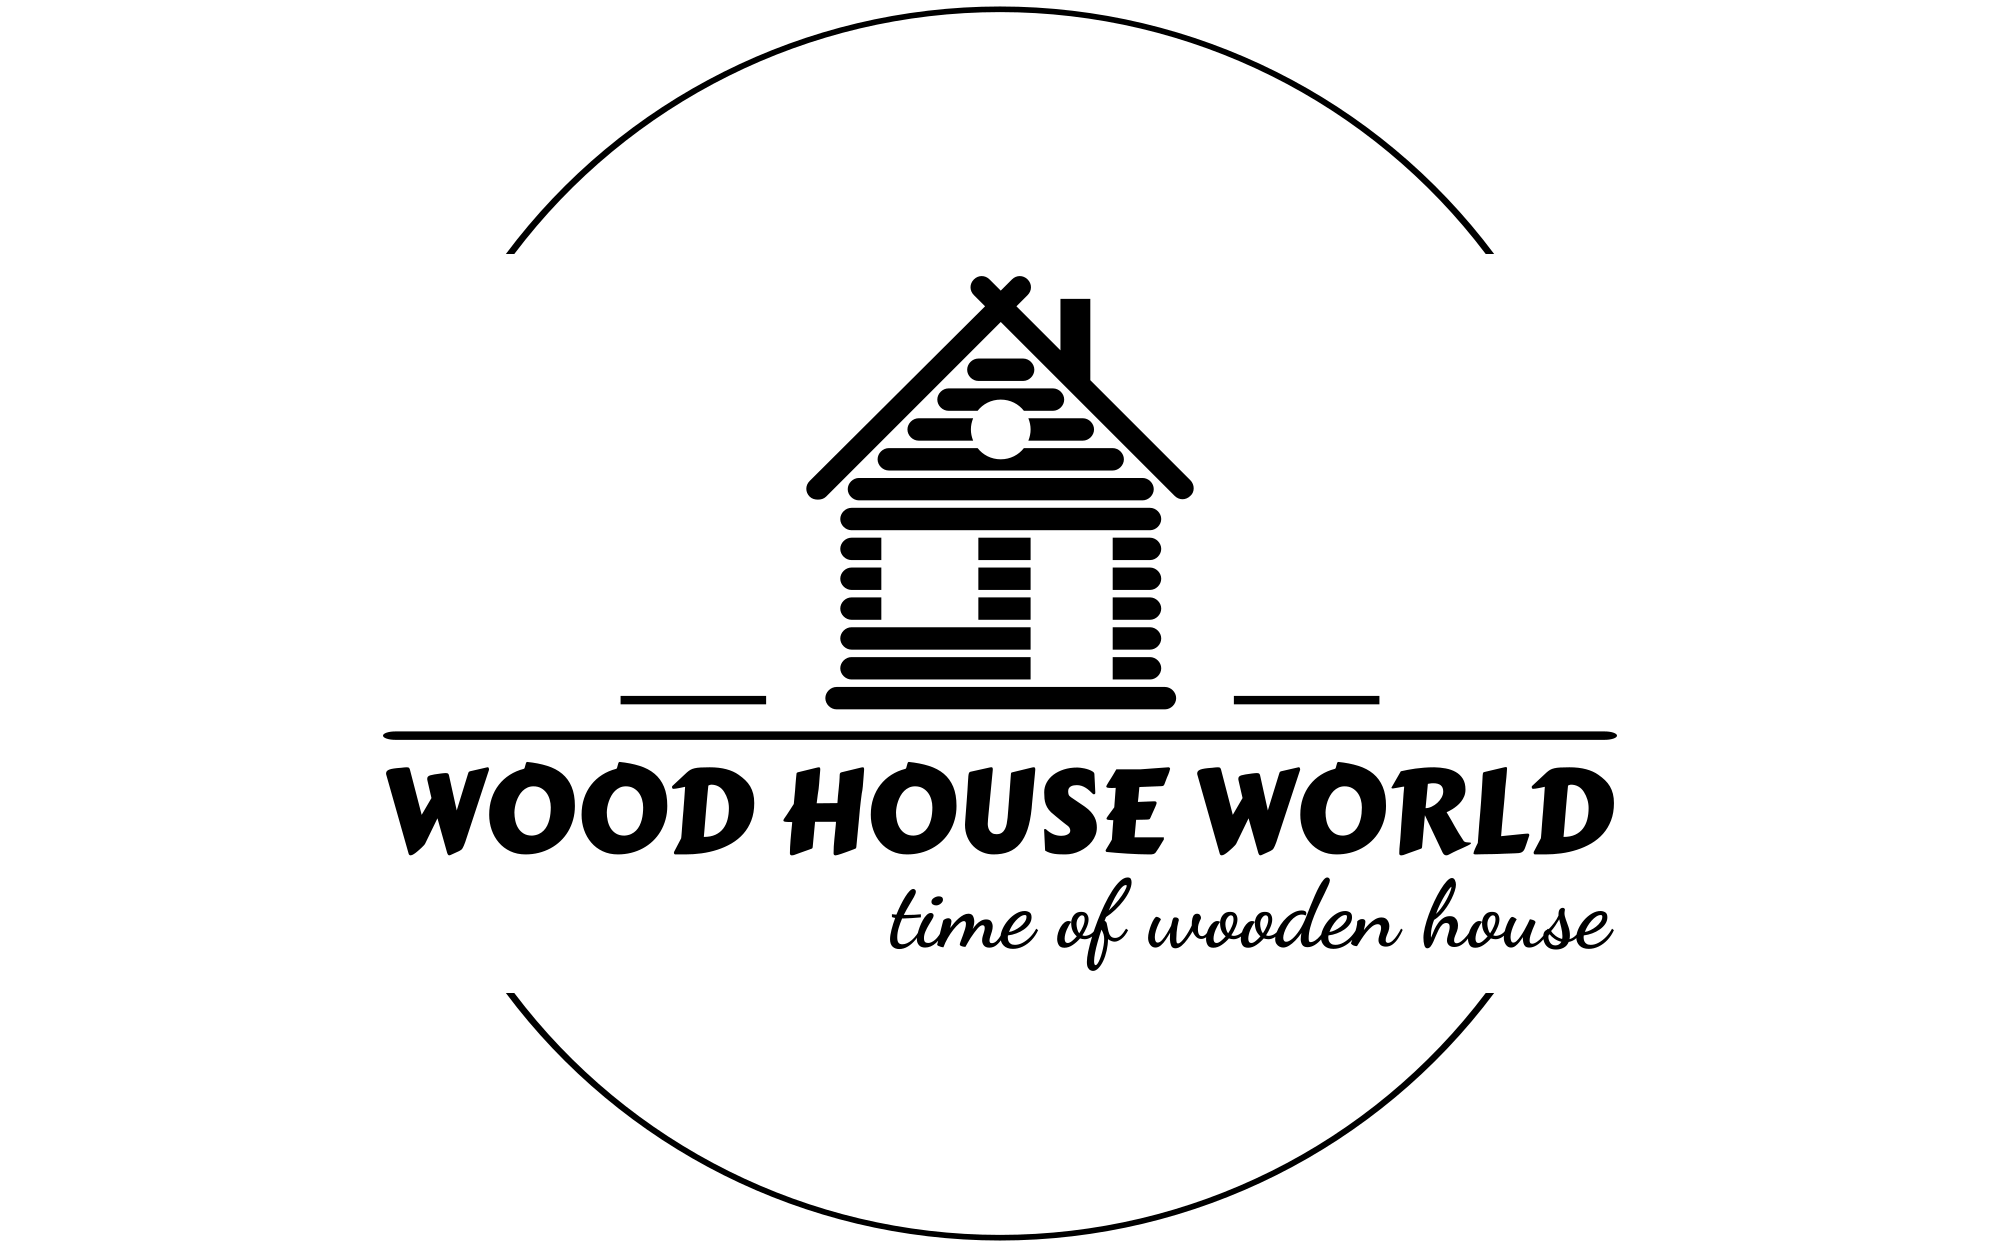 Wood House World